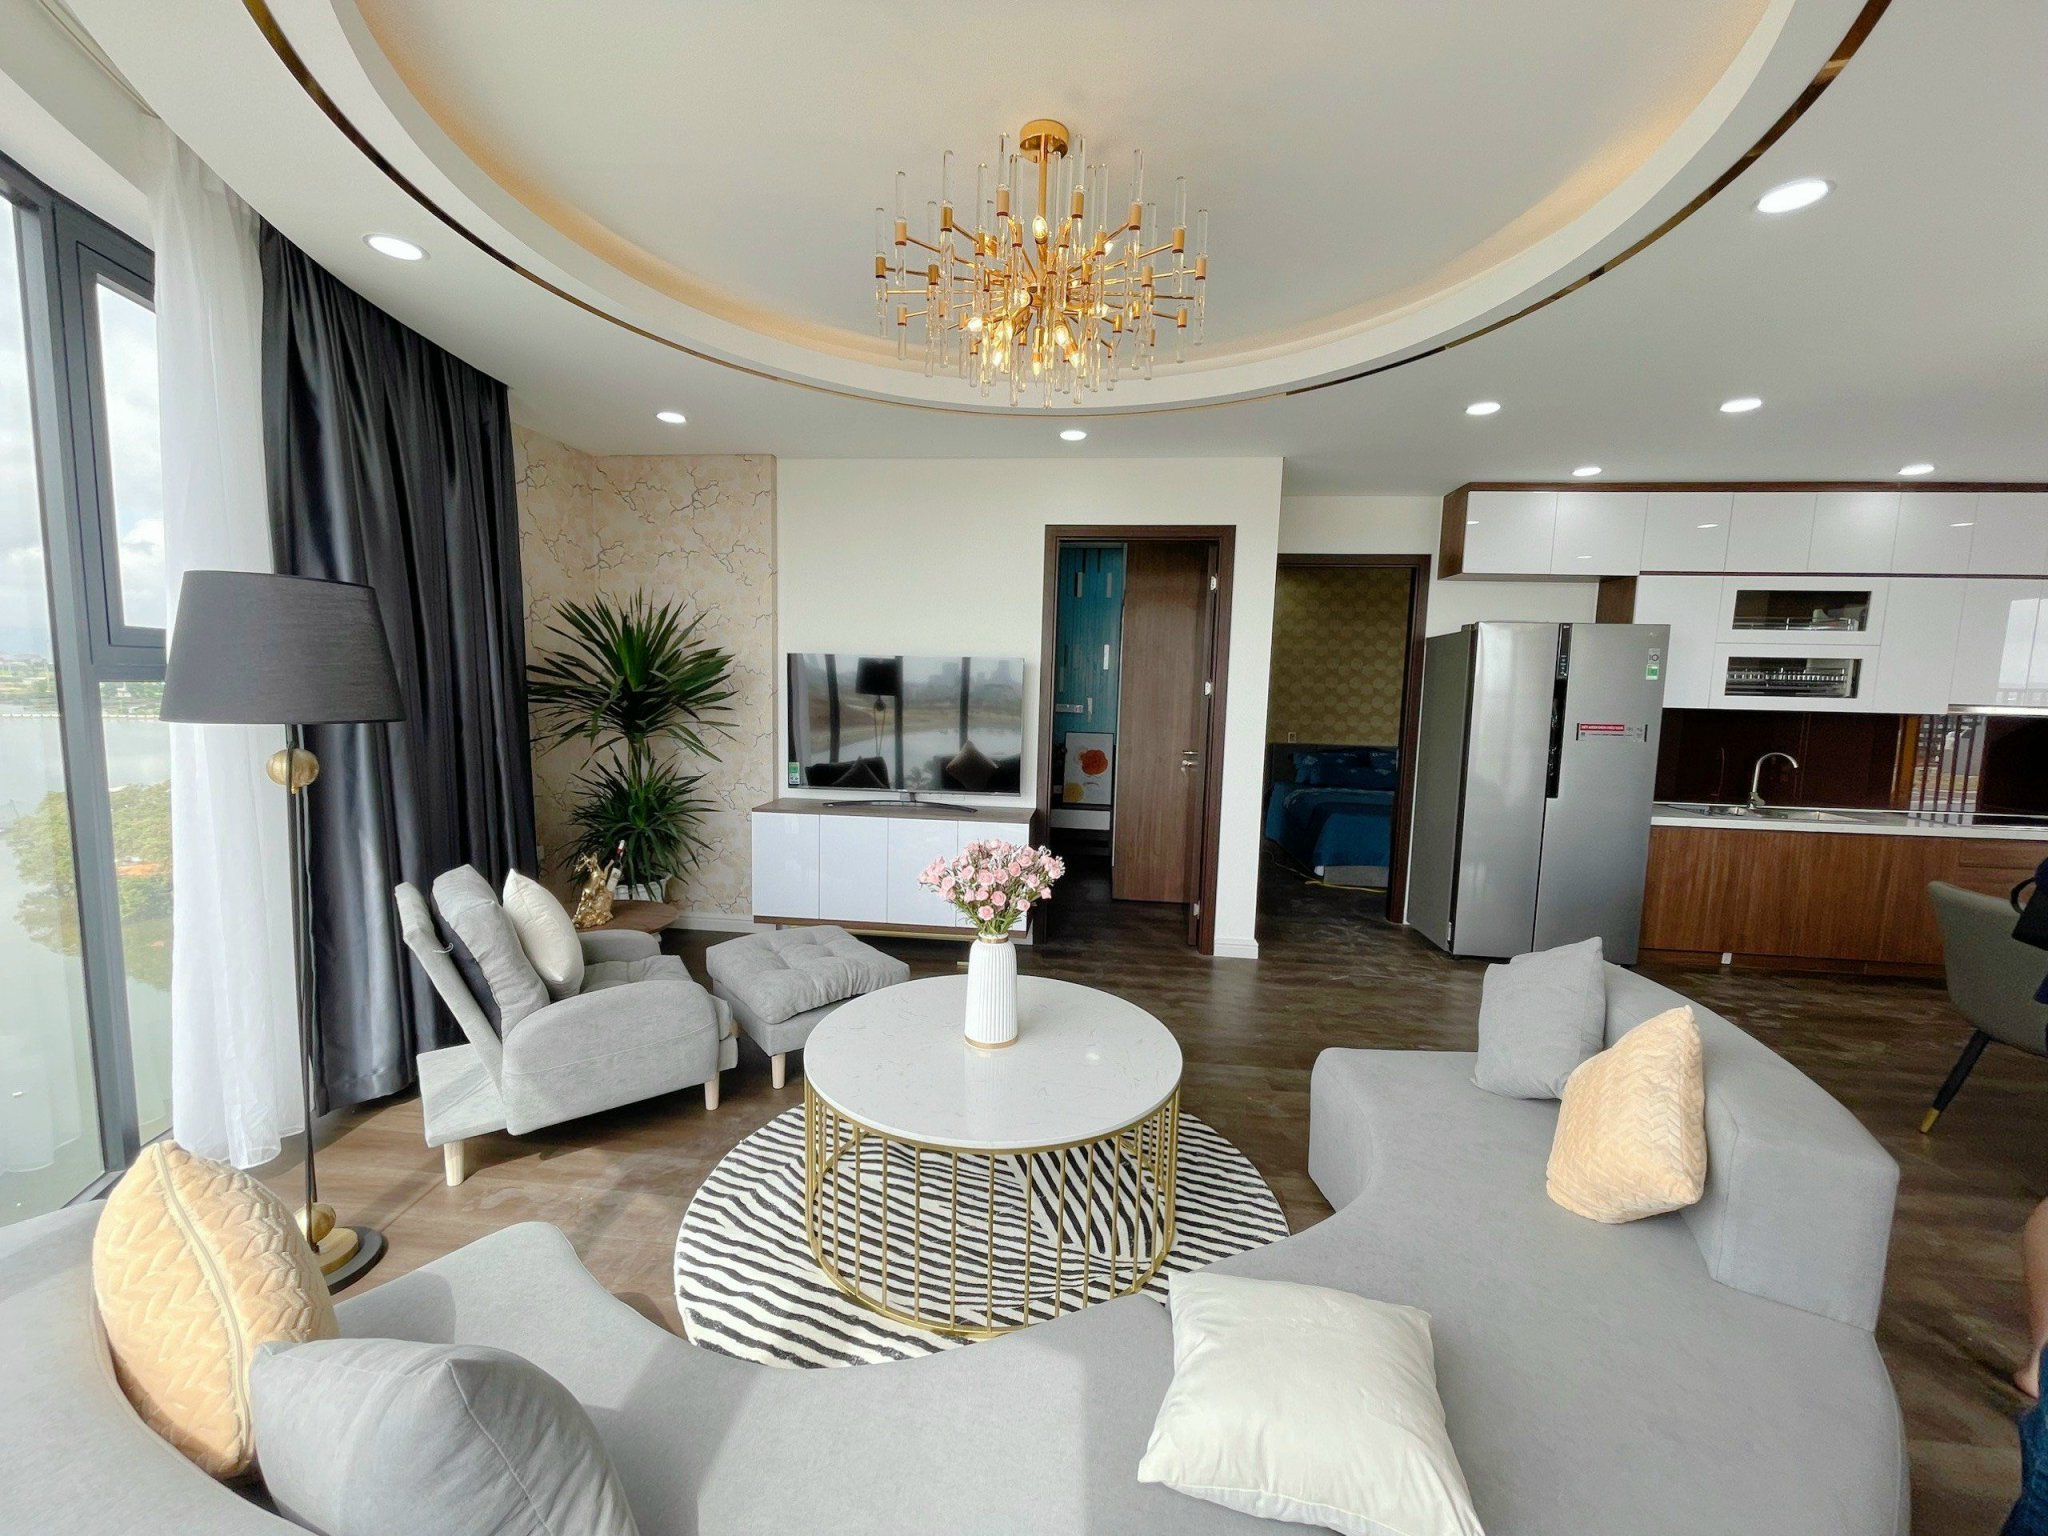 Duy nhất căn hộ 2 phòng ngủ giá chỉ 1,527 tr chung cư Vina2 panorama.